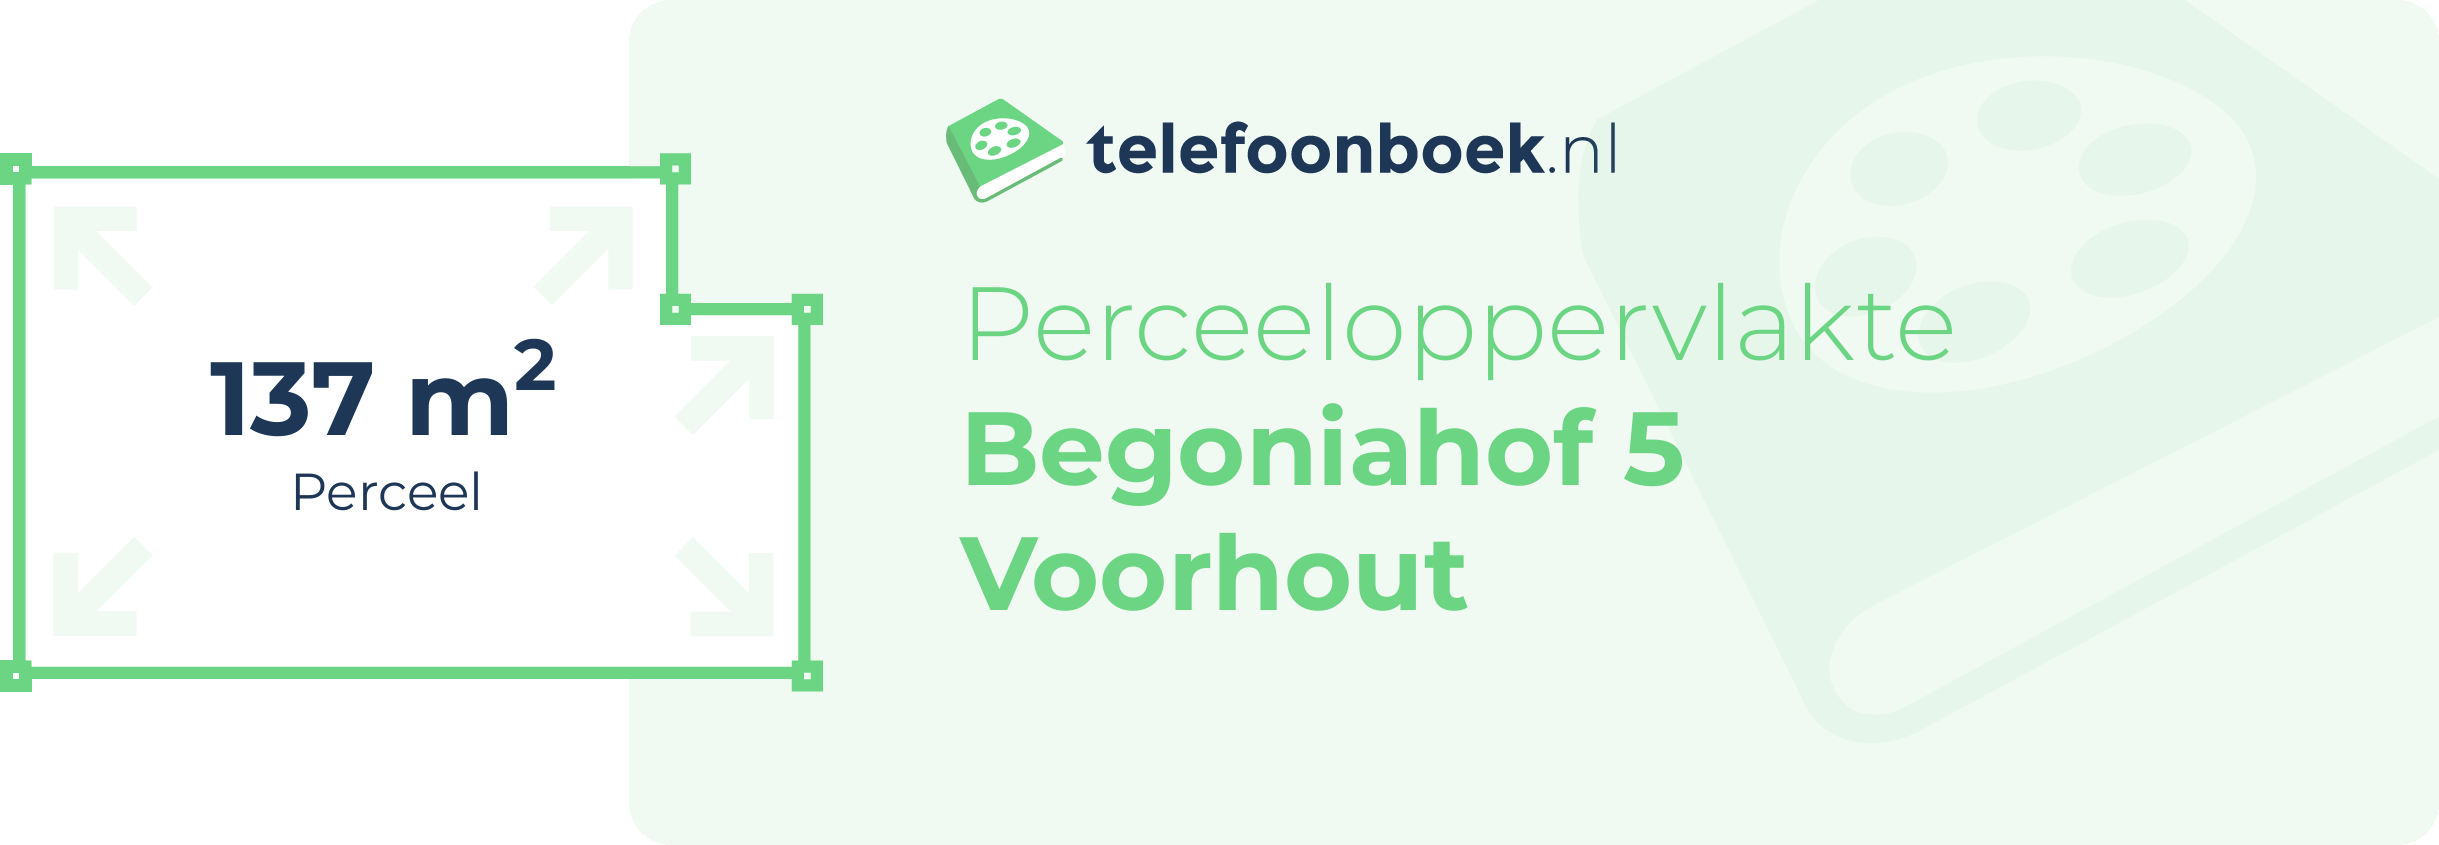 Perceeloppervlakte Begoniahof 5 Voorhout